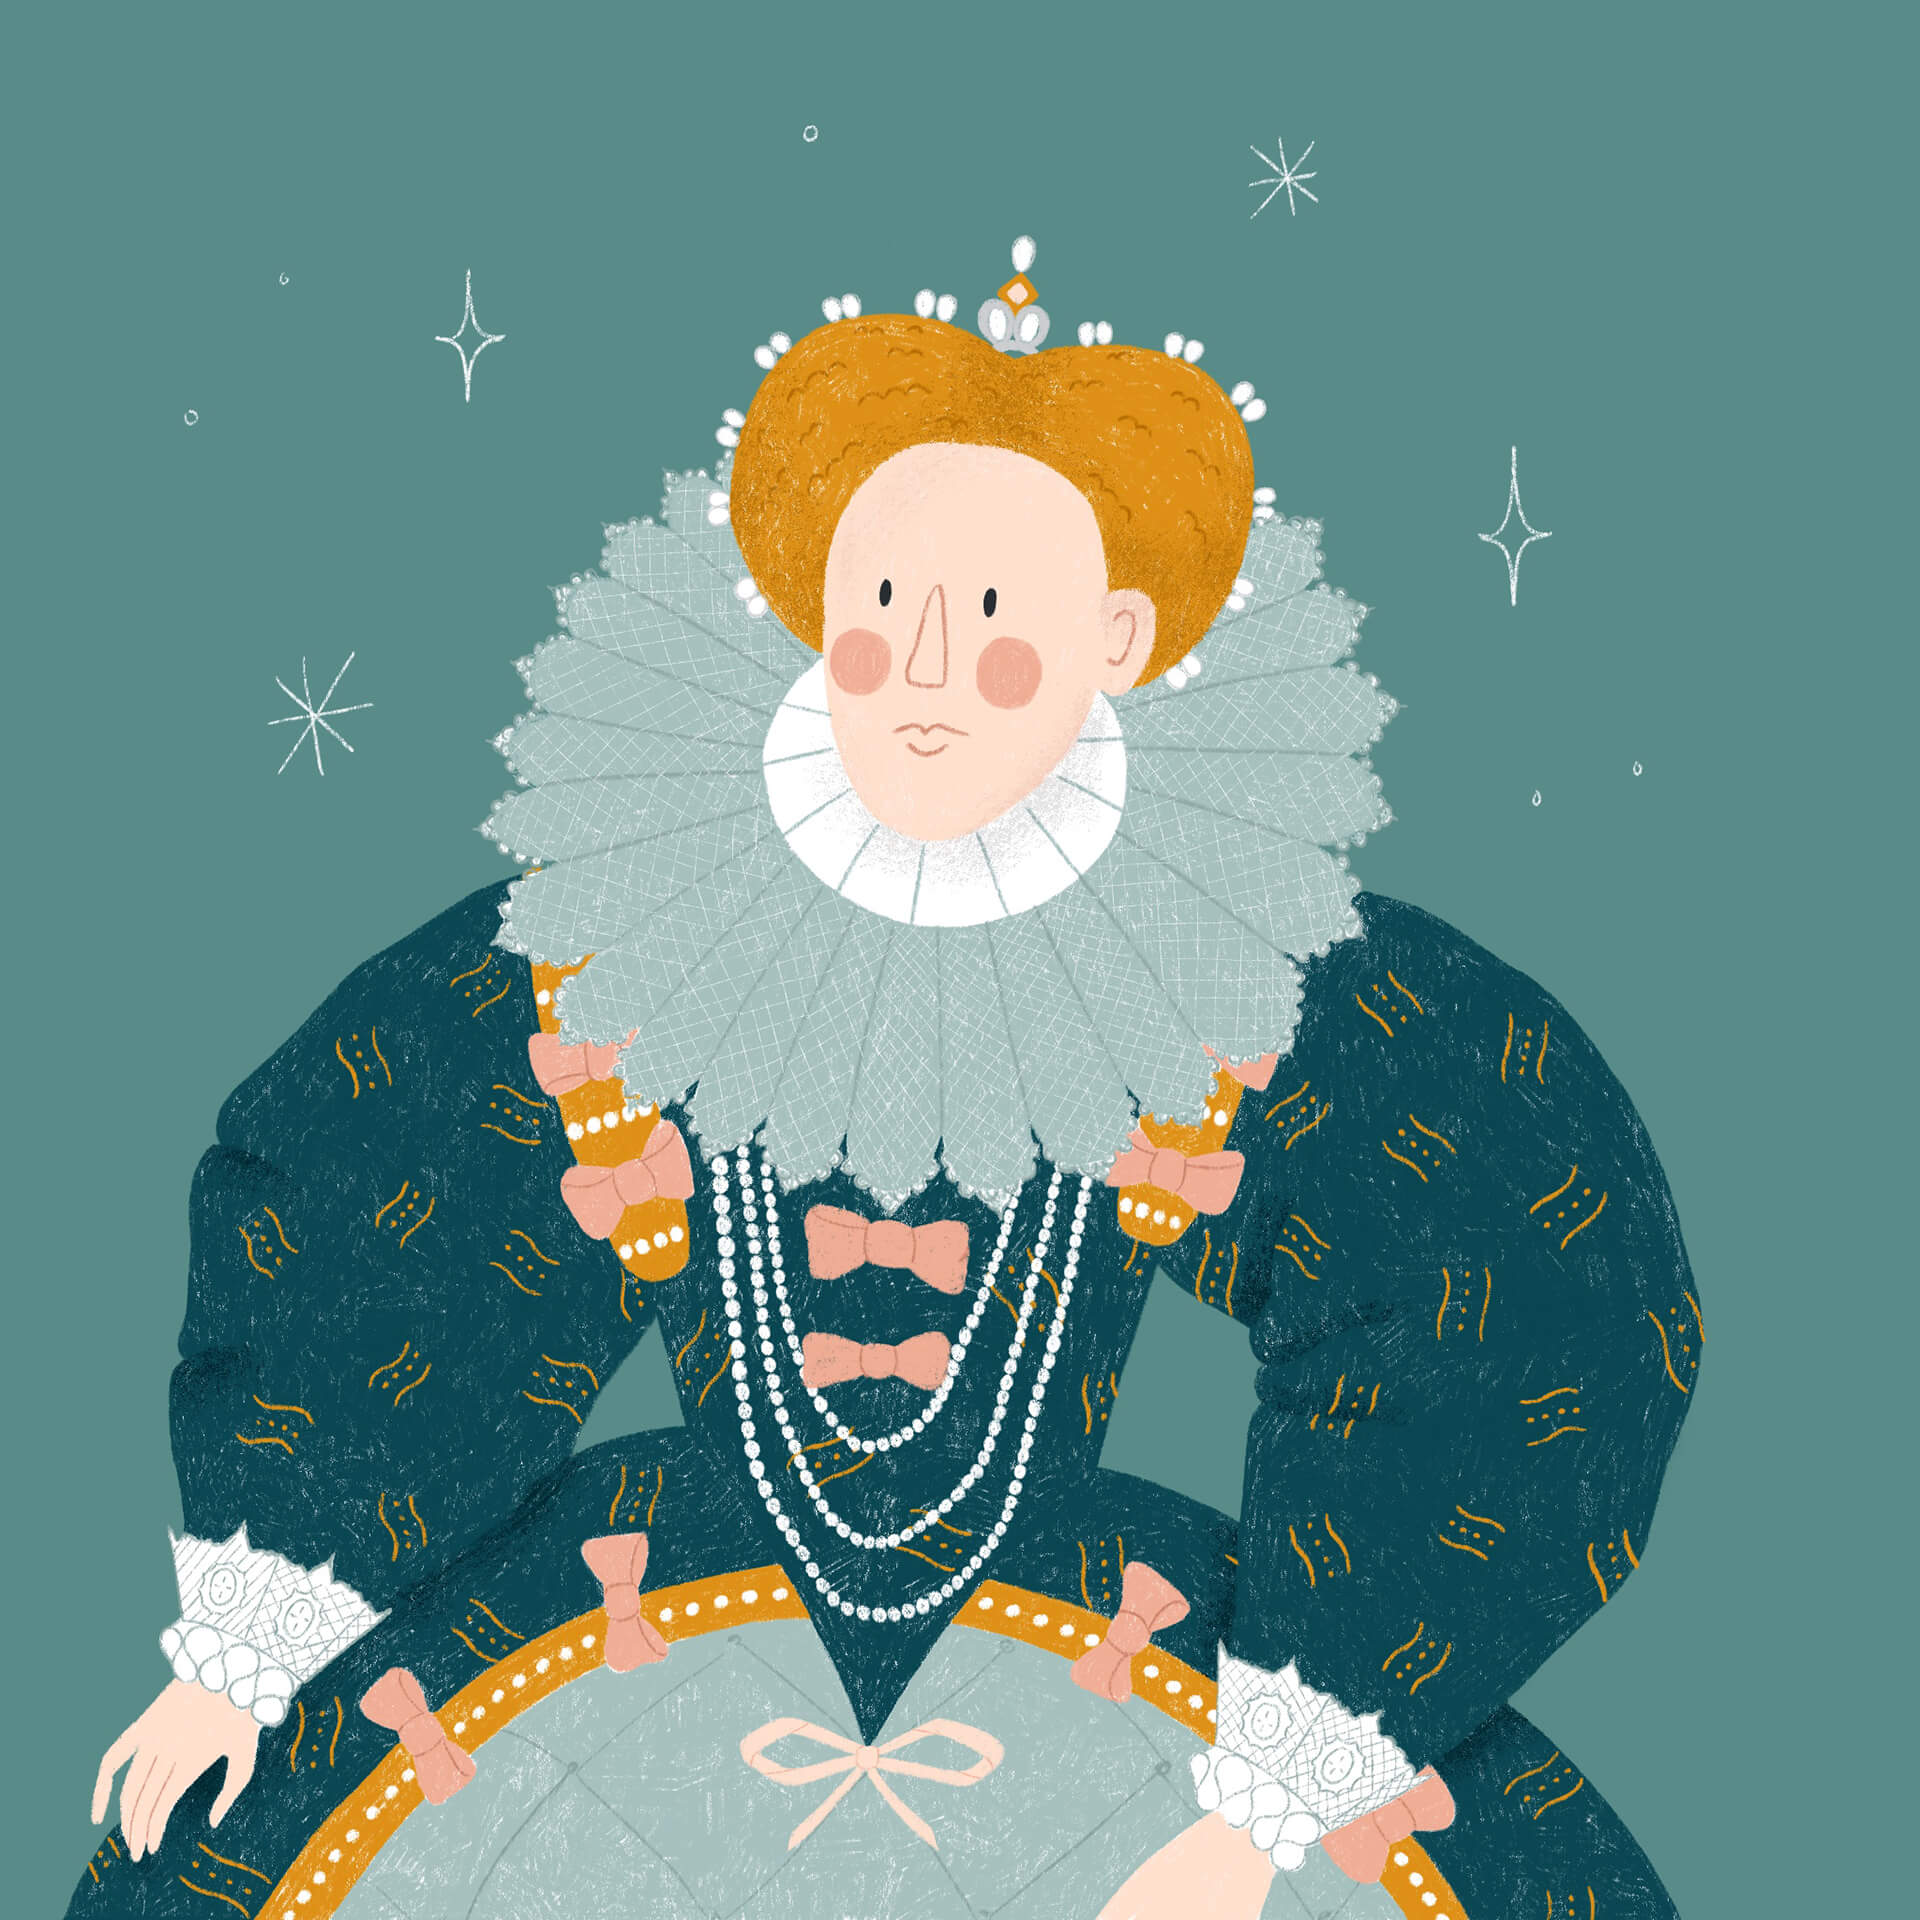 An illustrated portrait of Queen Elizabeth II